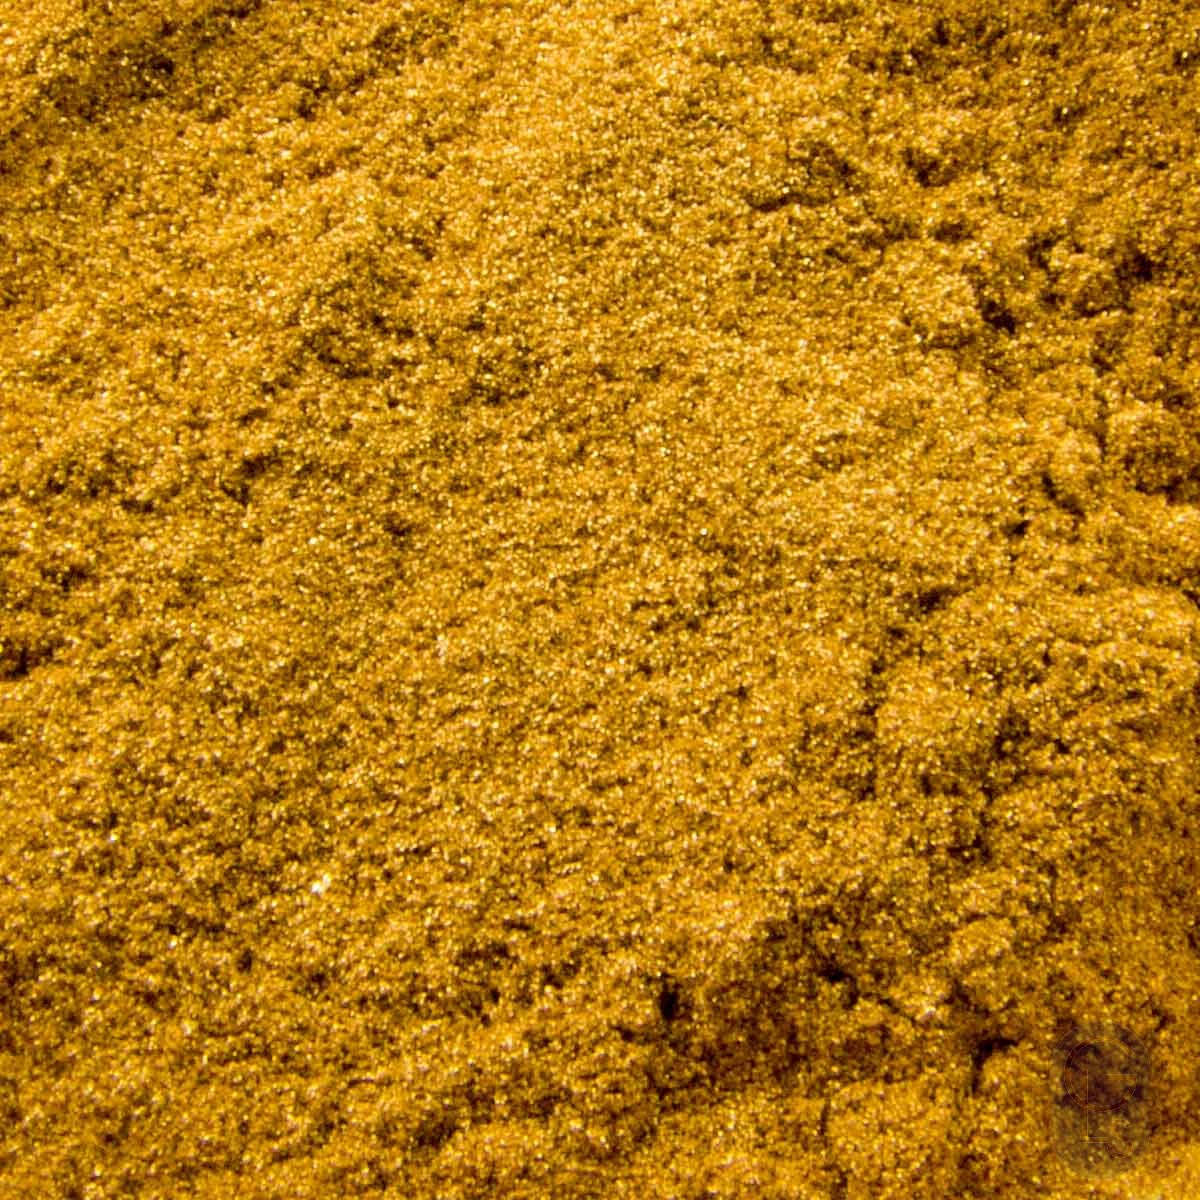 Gold Powder - 23.5ct - 1g - Gold Leaf Supplies